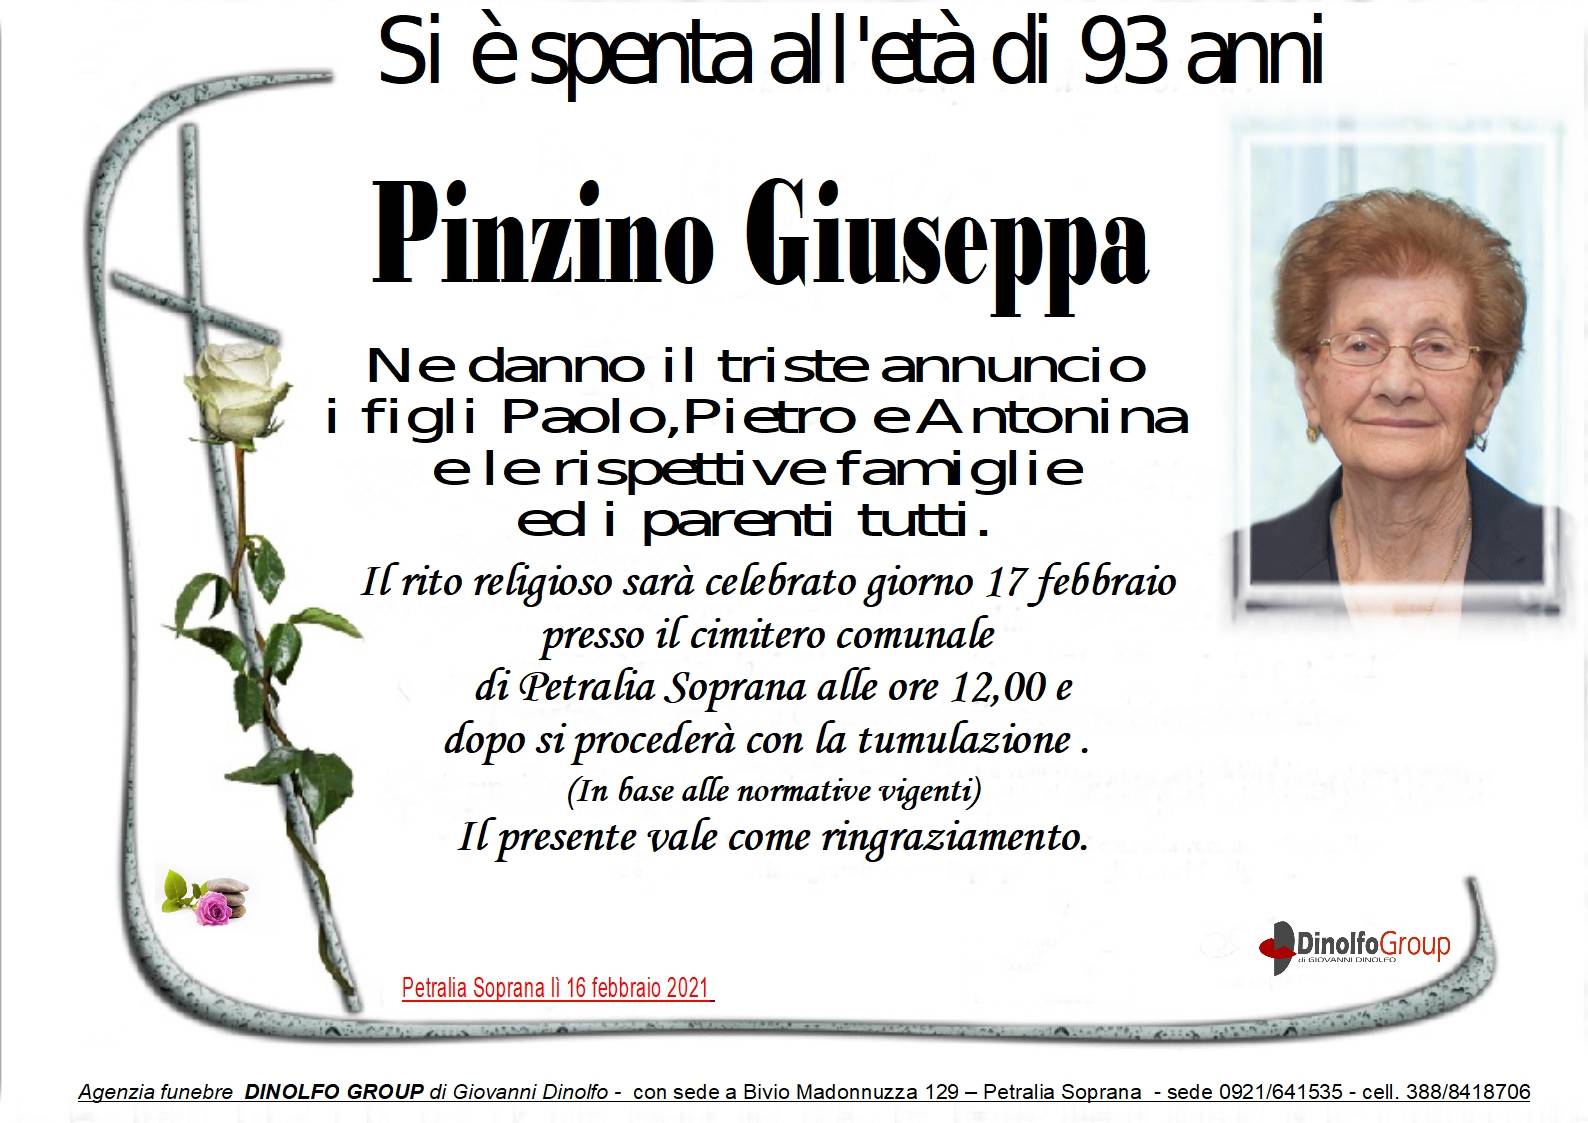 Giuseppa Pinzino